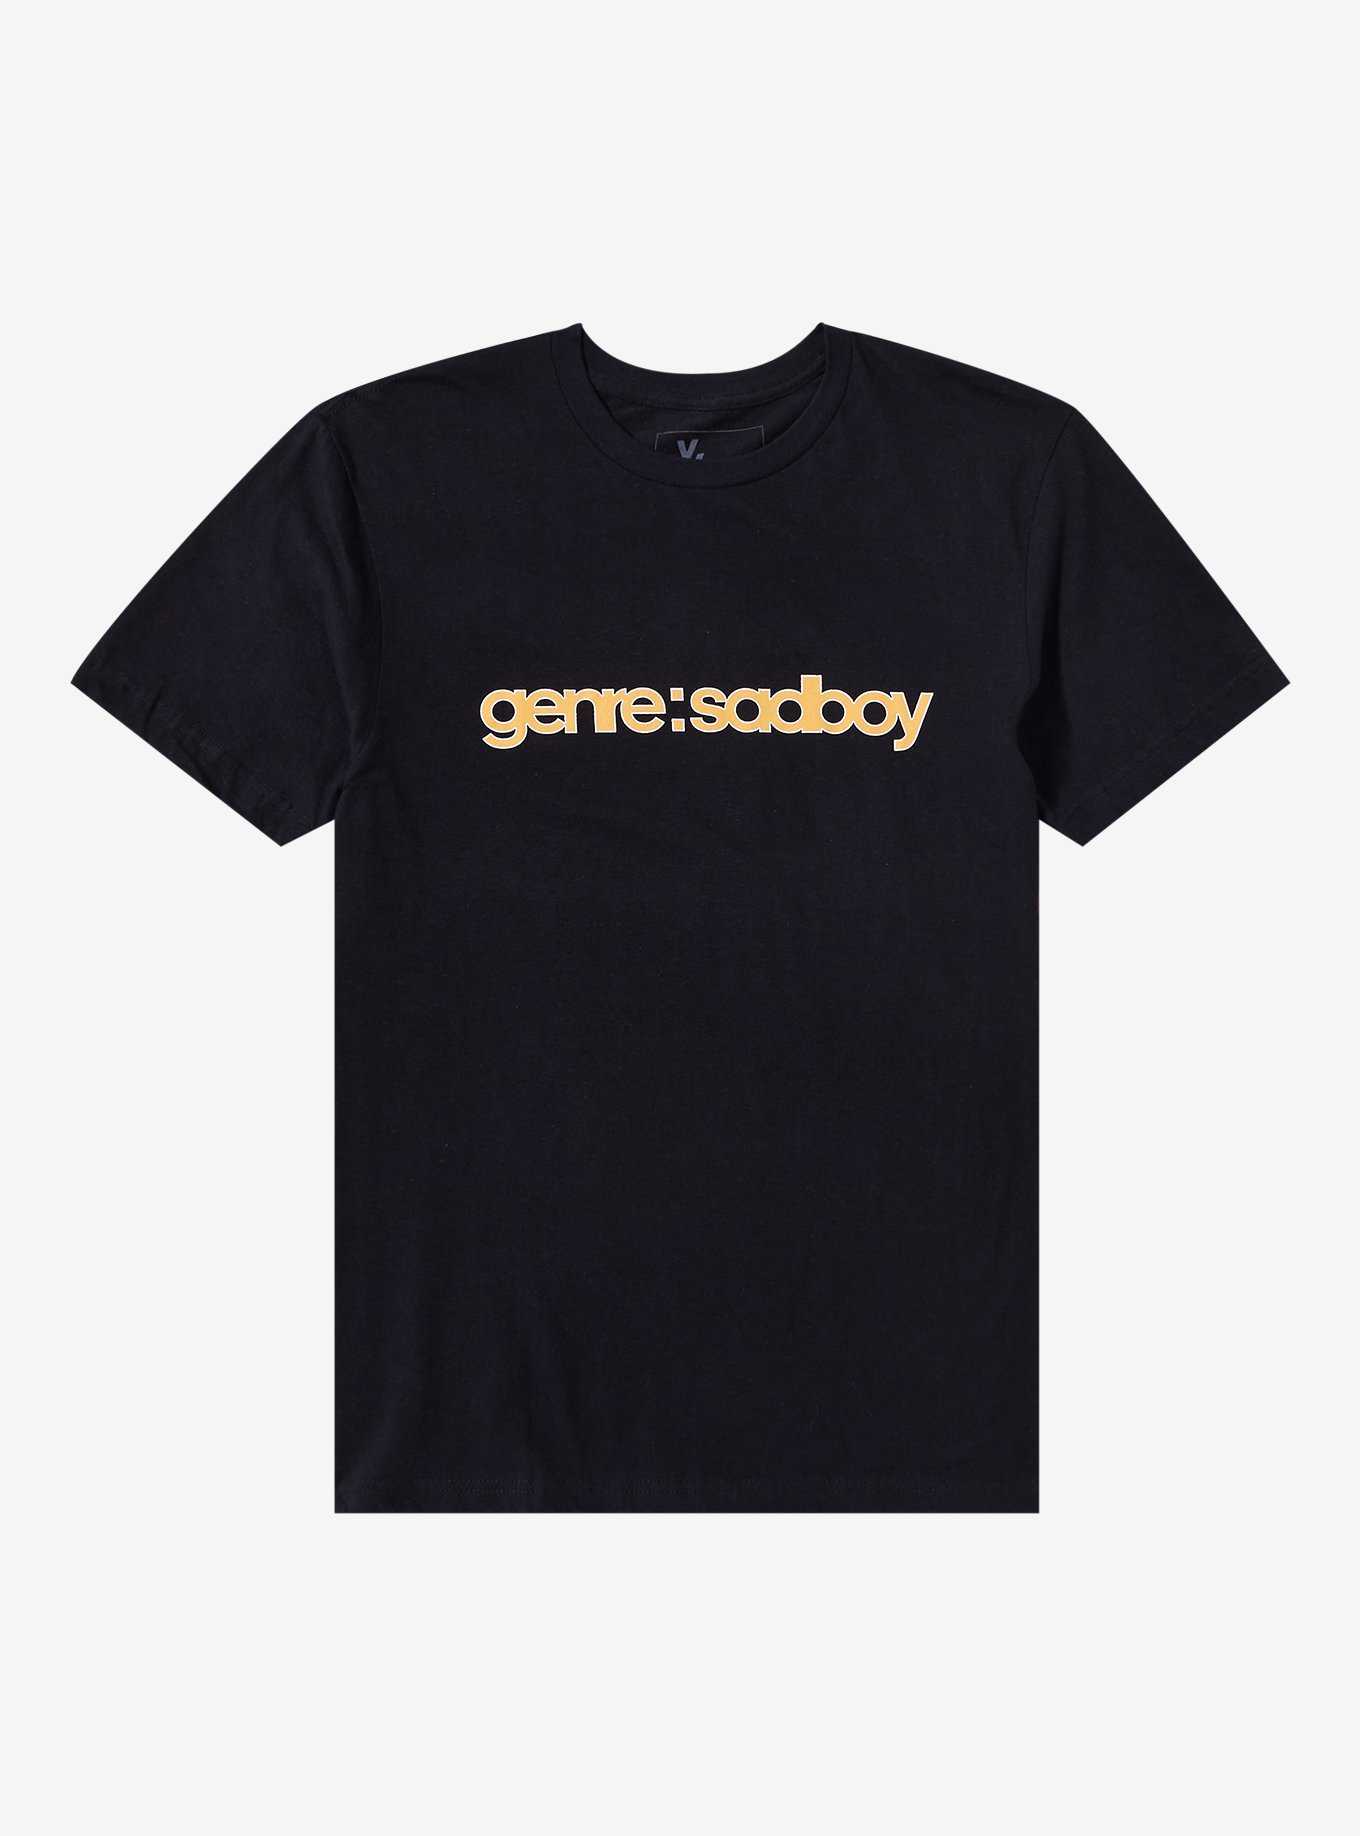 mgk X Trippie Redd genre : sadboy Two-Sided T-Shirt, , hi-res